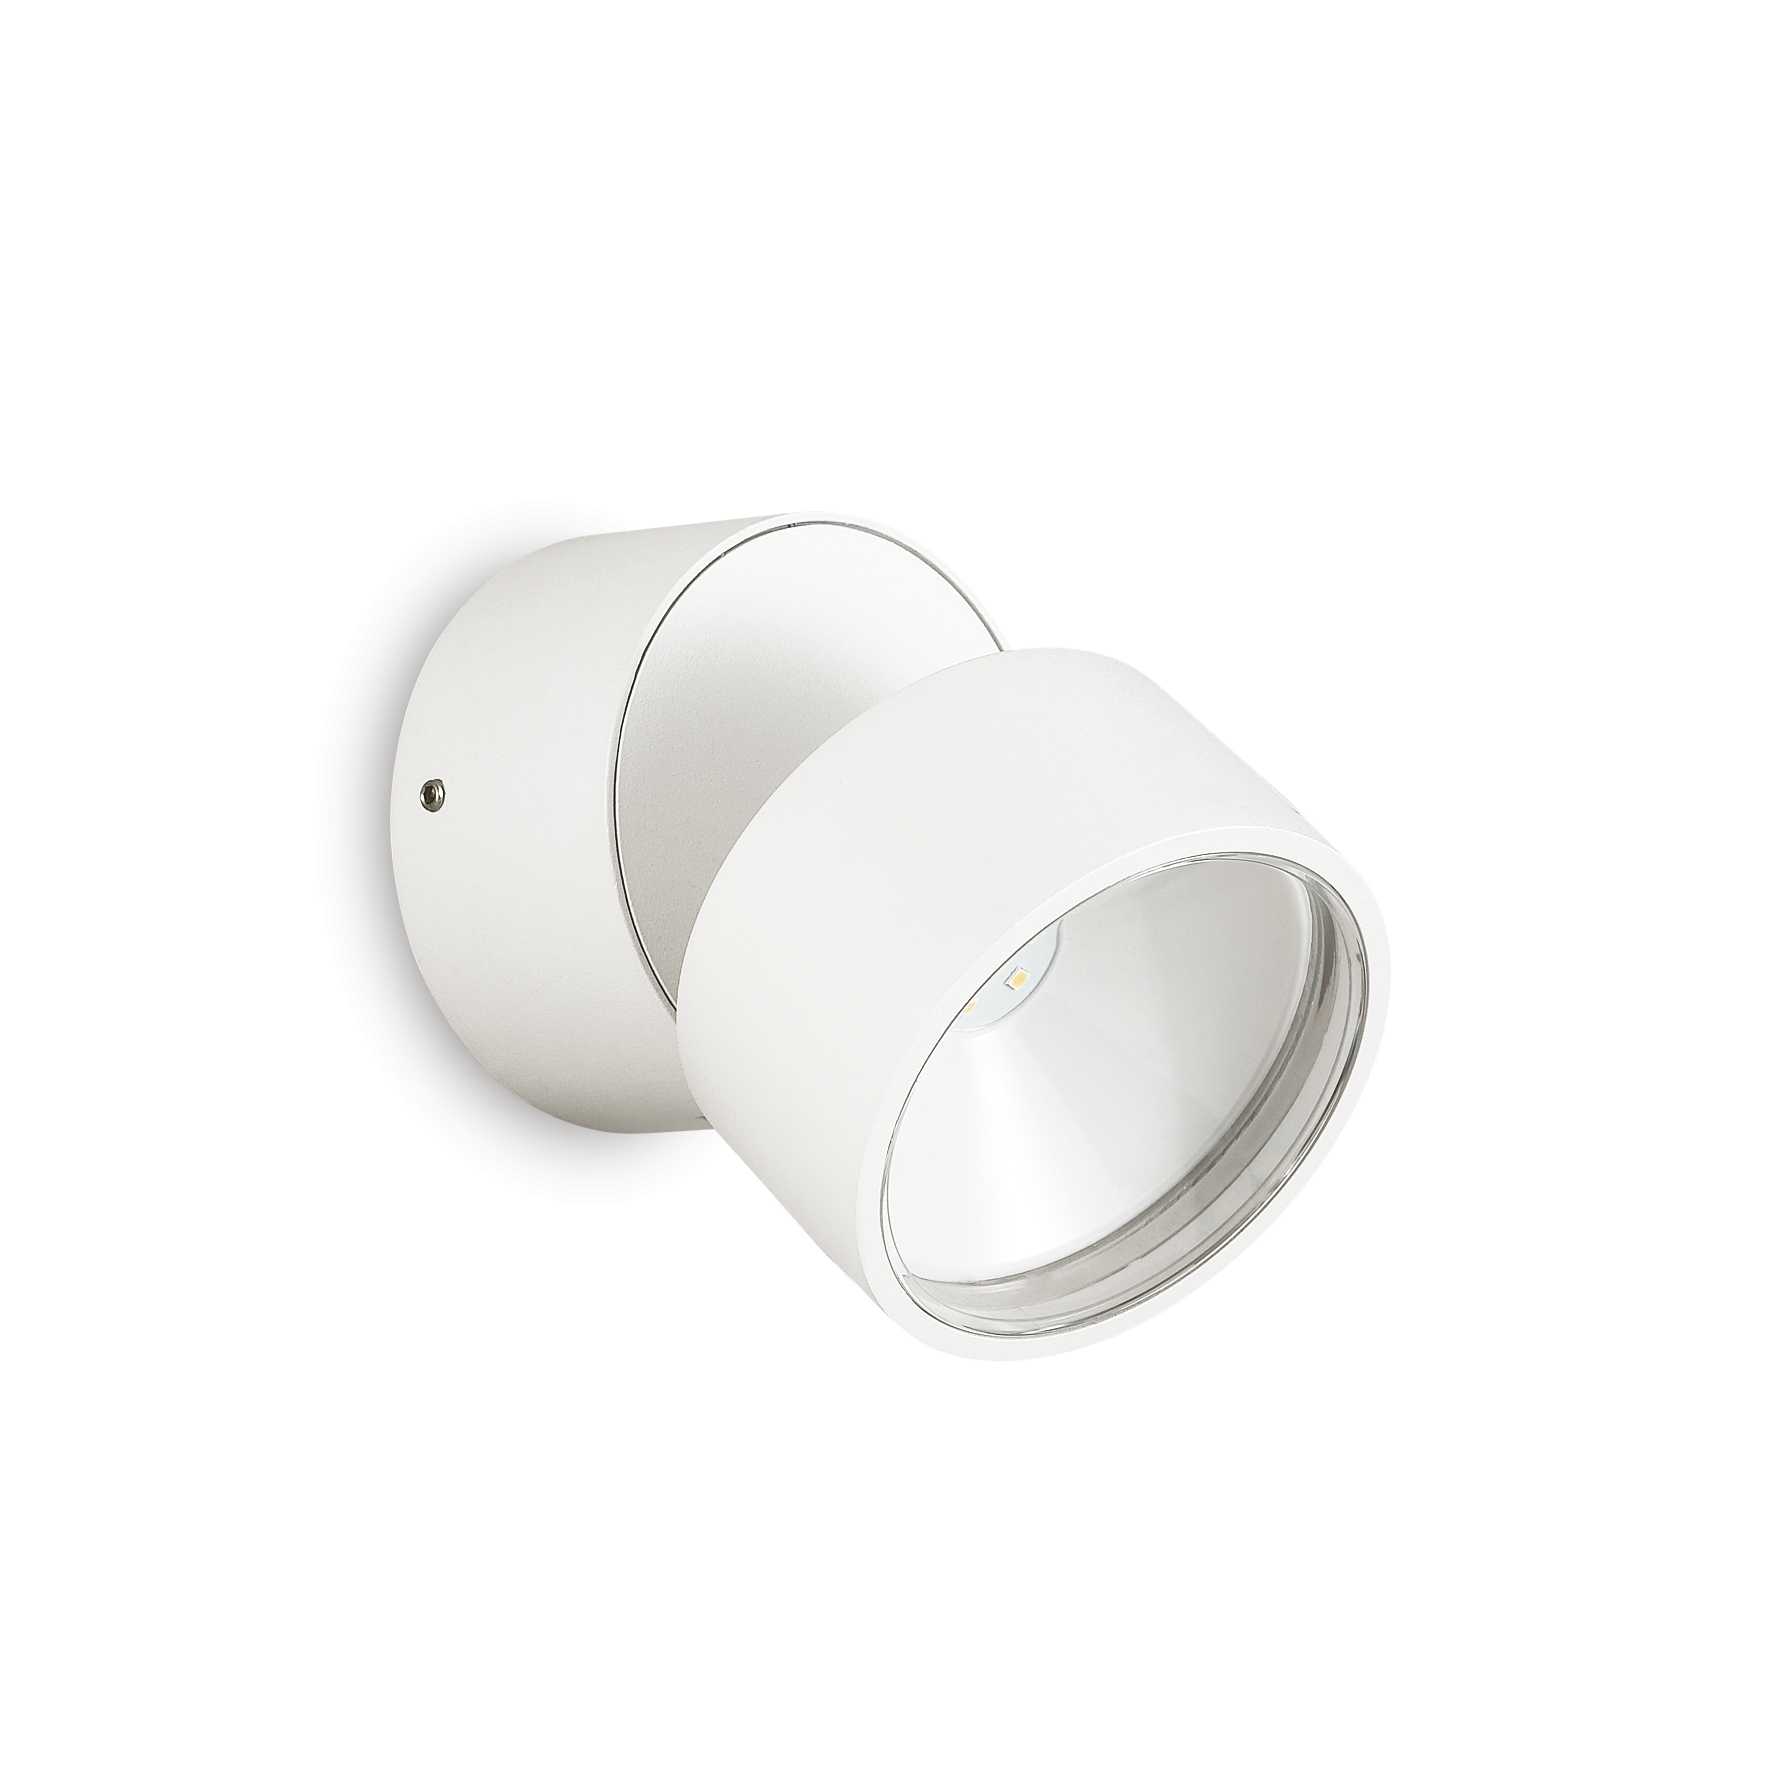 AD hotelska oprema Vanjska zidna lampa Omega ap okrugla (4000k)- Bijele boje slika proizvoda